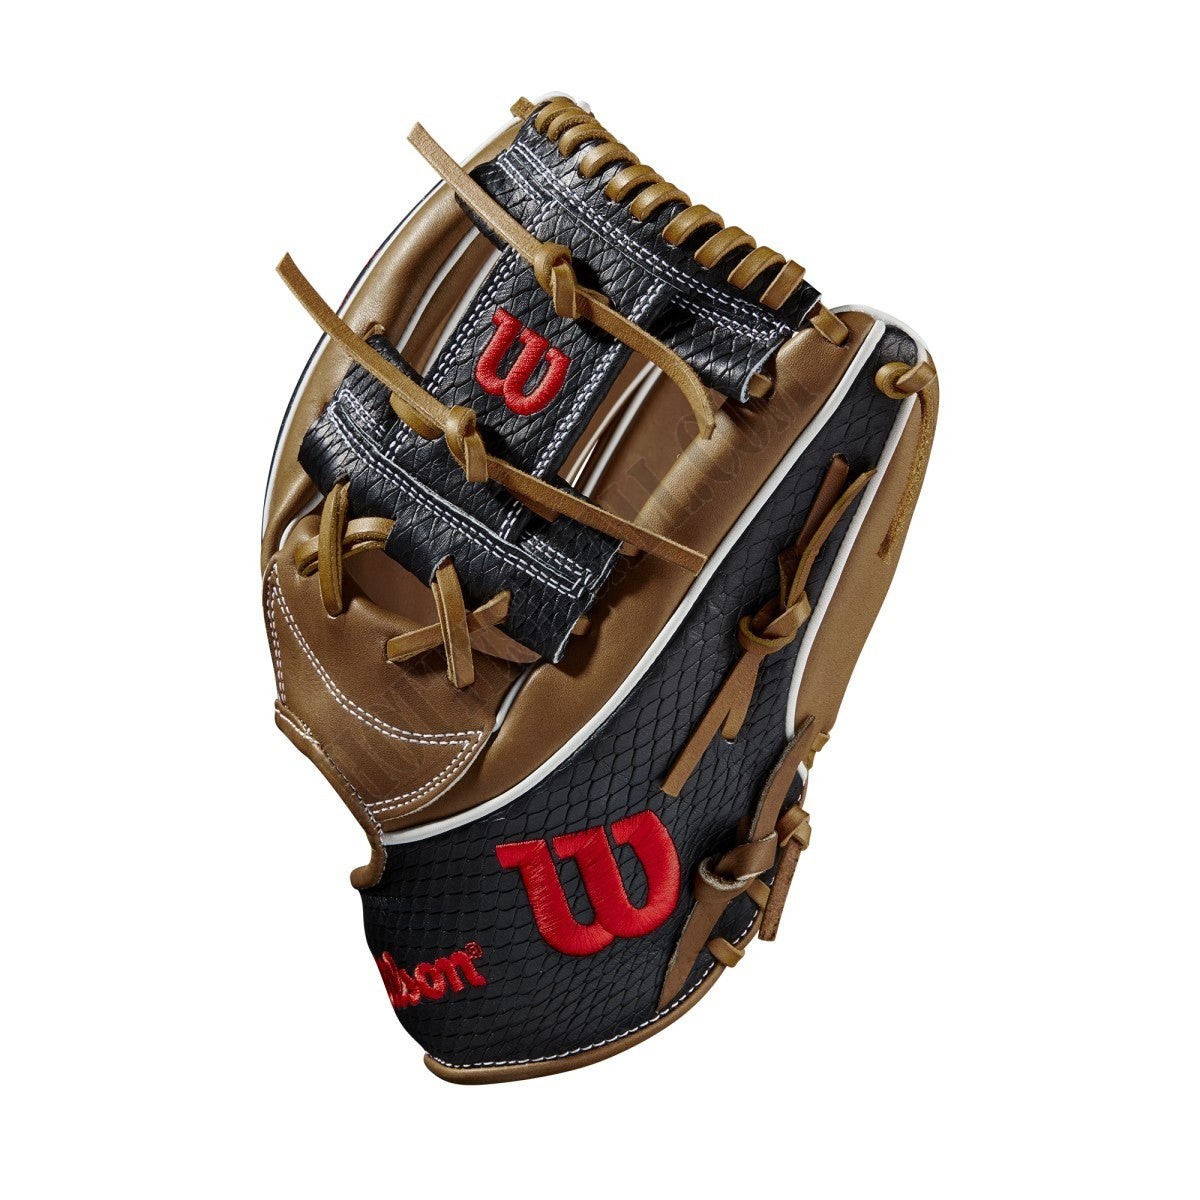 2021 A2K 1787 11.75" Infield Baseball Glove ● Wilson Promotions - -3